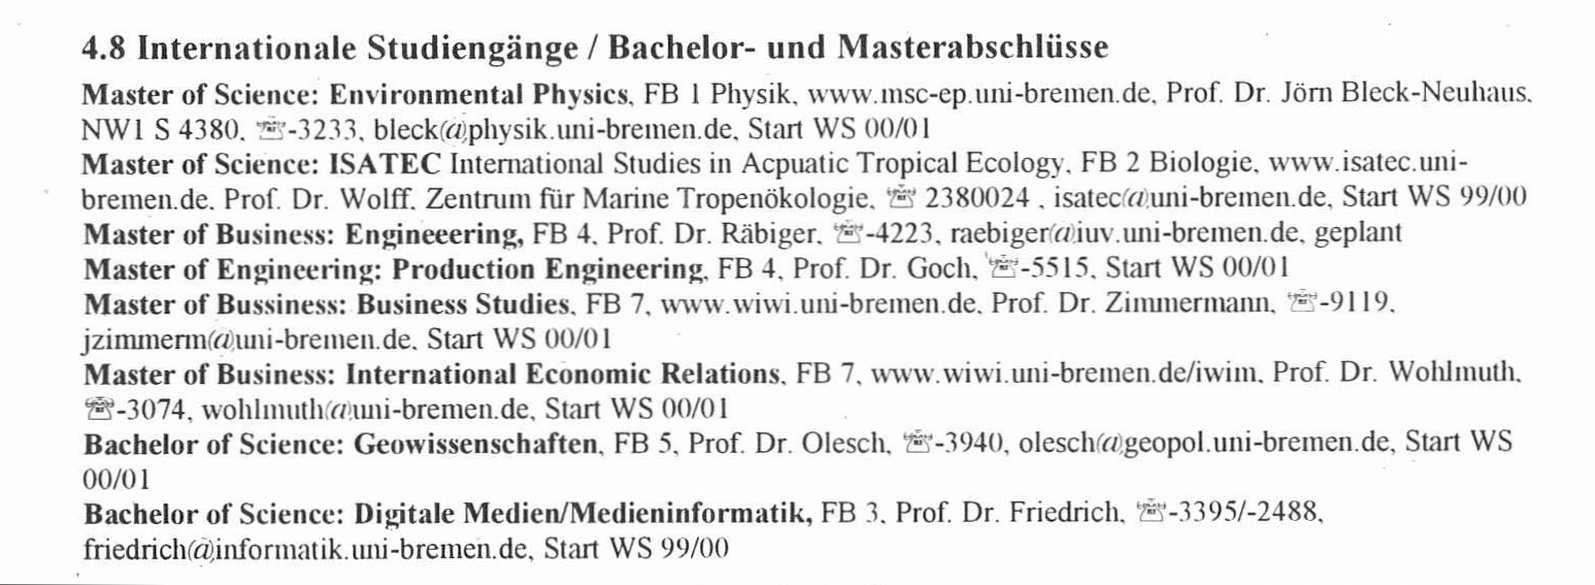 Ausschnitt aus einer Seite des Veranstaltungsverzeichnises 2001/2002 mit einer Aufstellung der an der Universität Bremen angebotenen acht Bachelor und Masterstudiengänge vorwiegend in naturwissenschaftlichen Fächern.